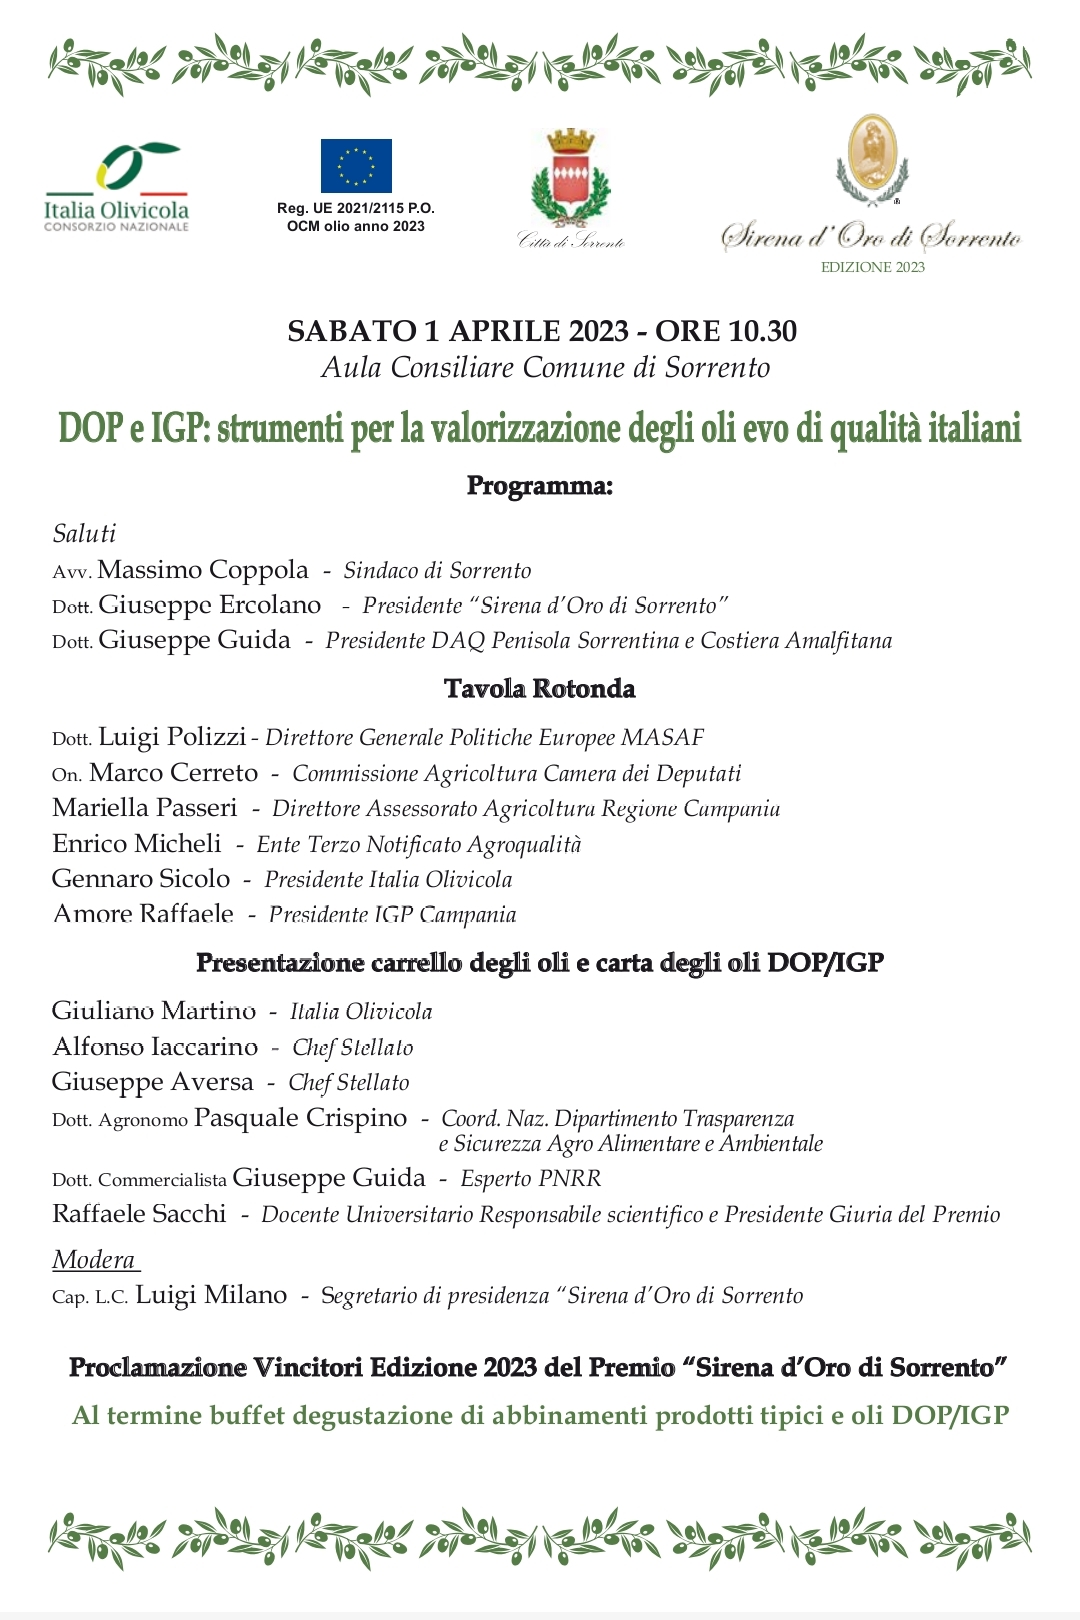 Sorrento: Premio Sirena d’Oro, Italia Olivicola – Comune  